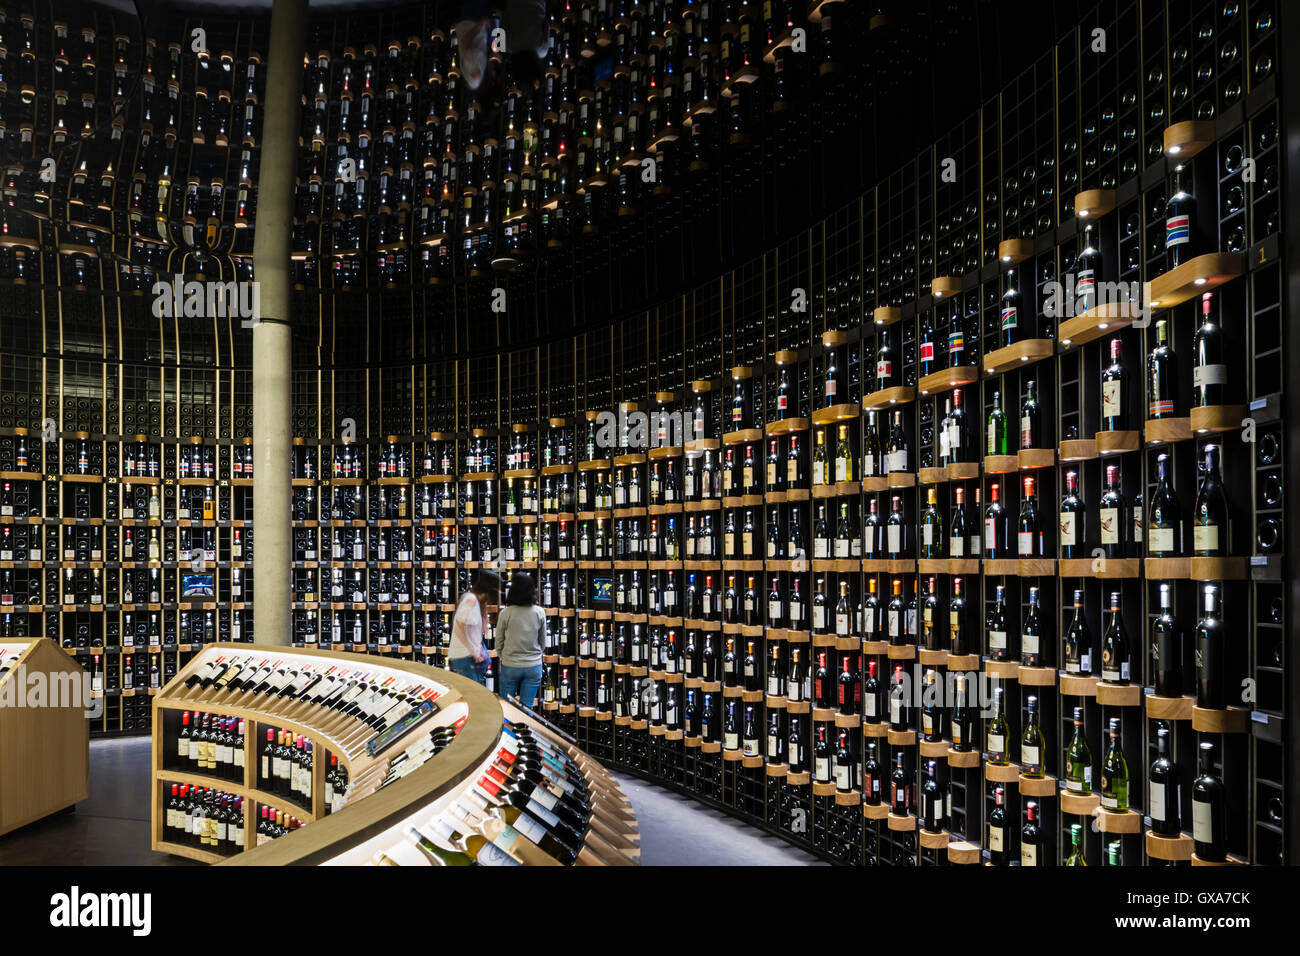 Breite 20 global Weinkeller mit mehr als 14.000 Flaschen, 800 Weine aus mehr als 70 Ländern rund um den Globus. La Cité du vin / The City of Wine, Bordeaux, Frankreich. Architekt: XTU Architekten, 2016. Stockfoto